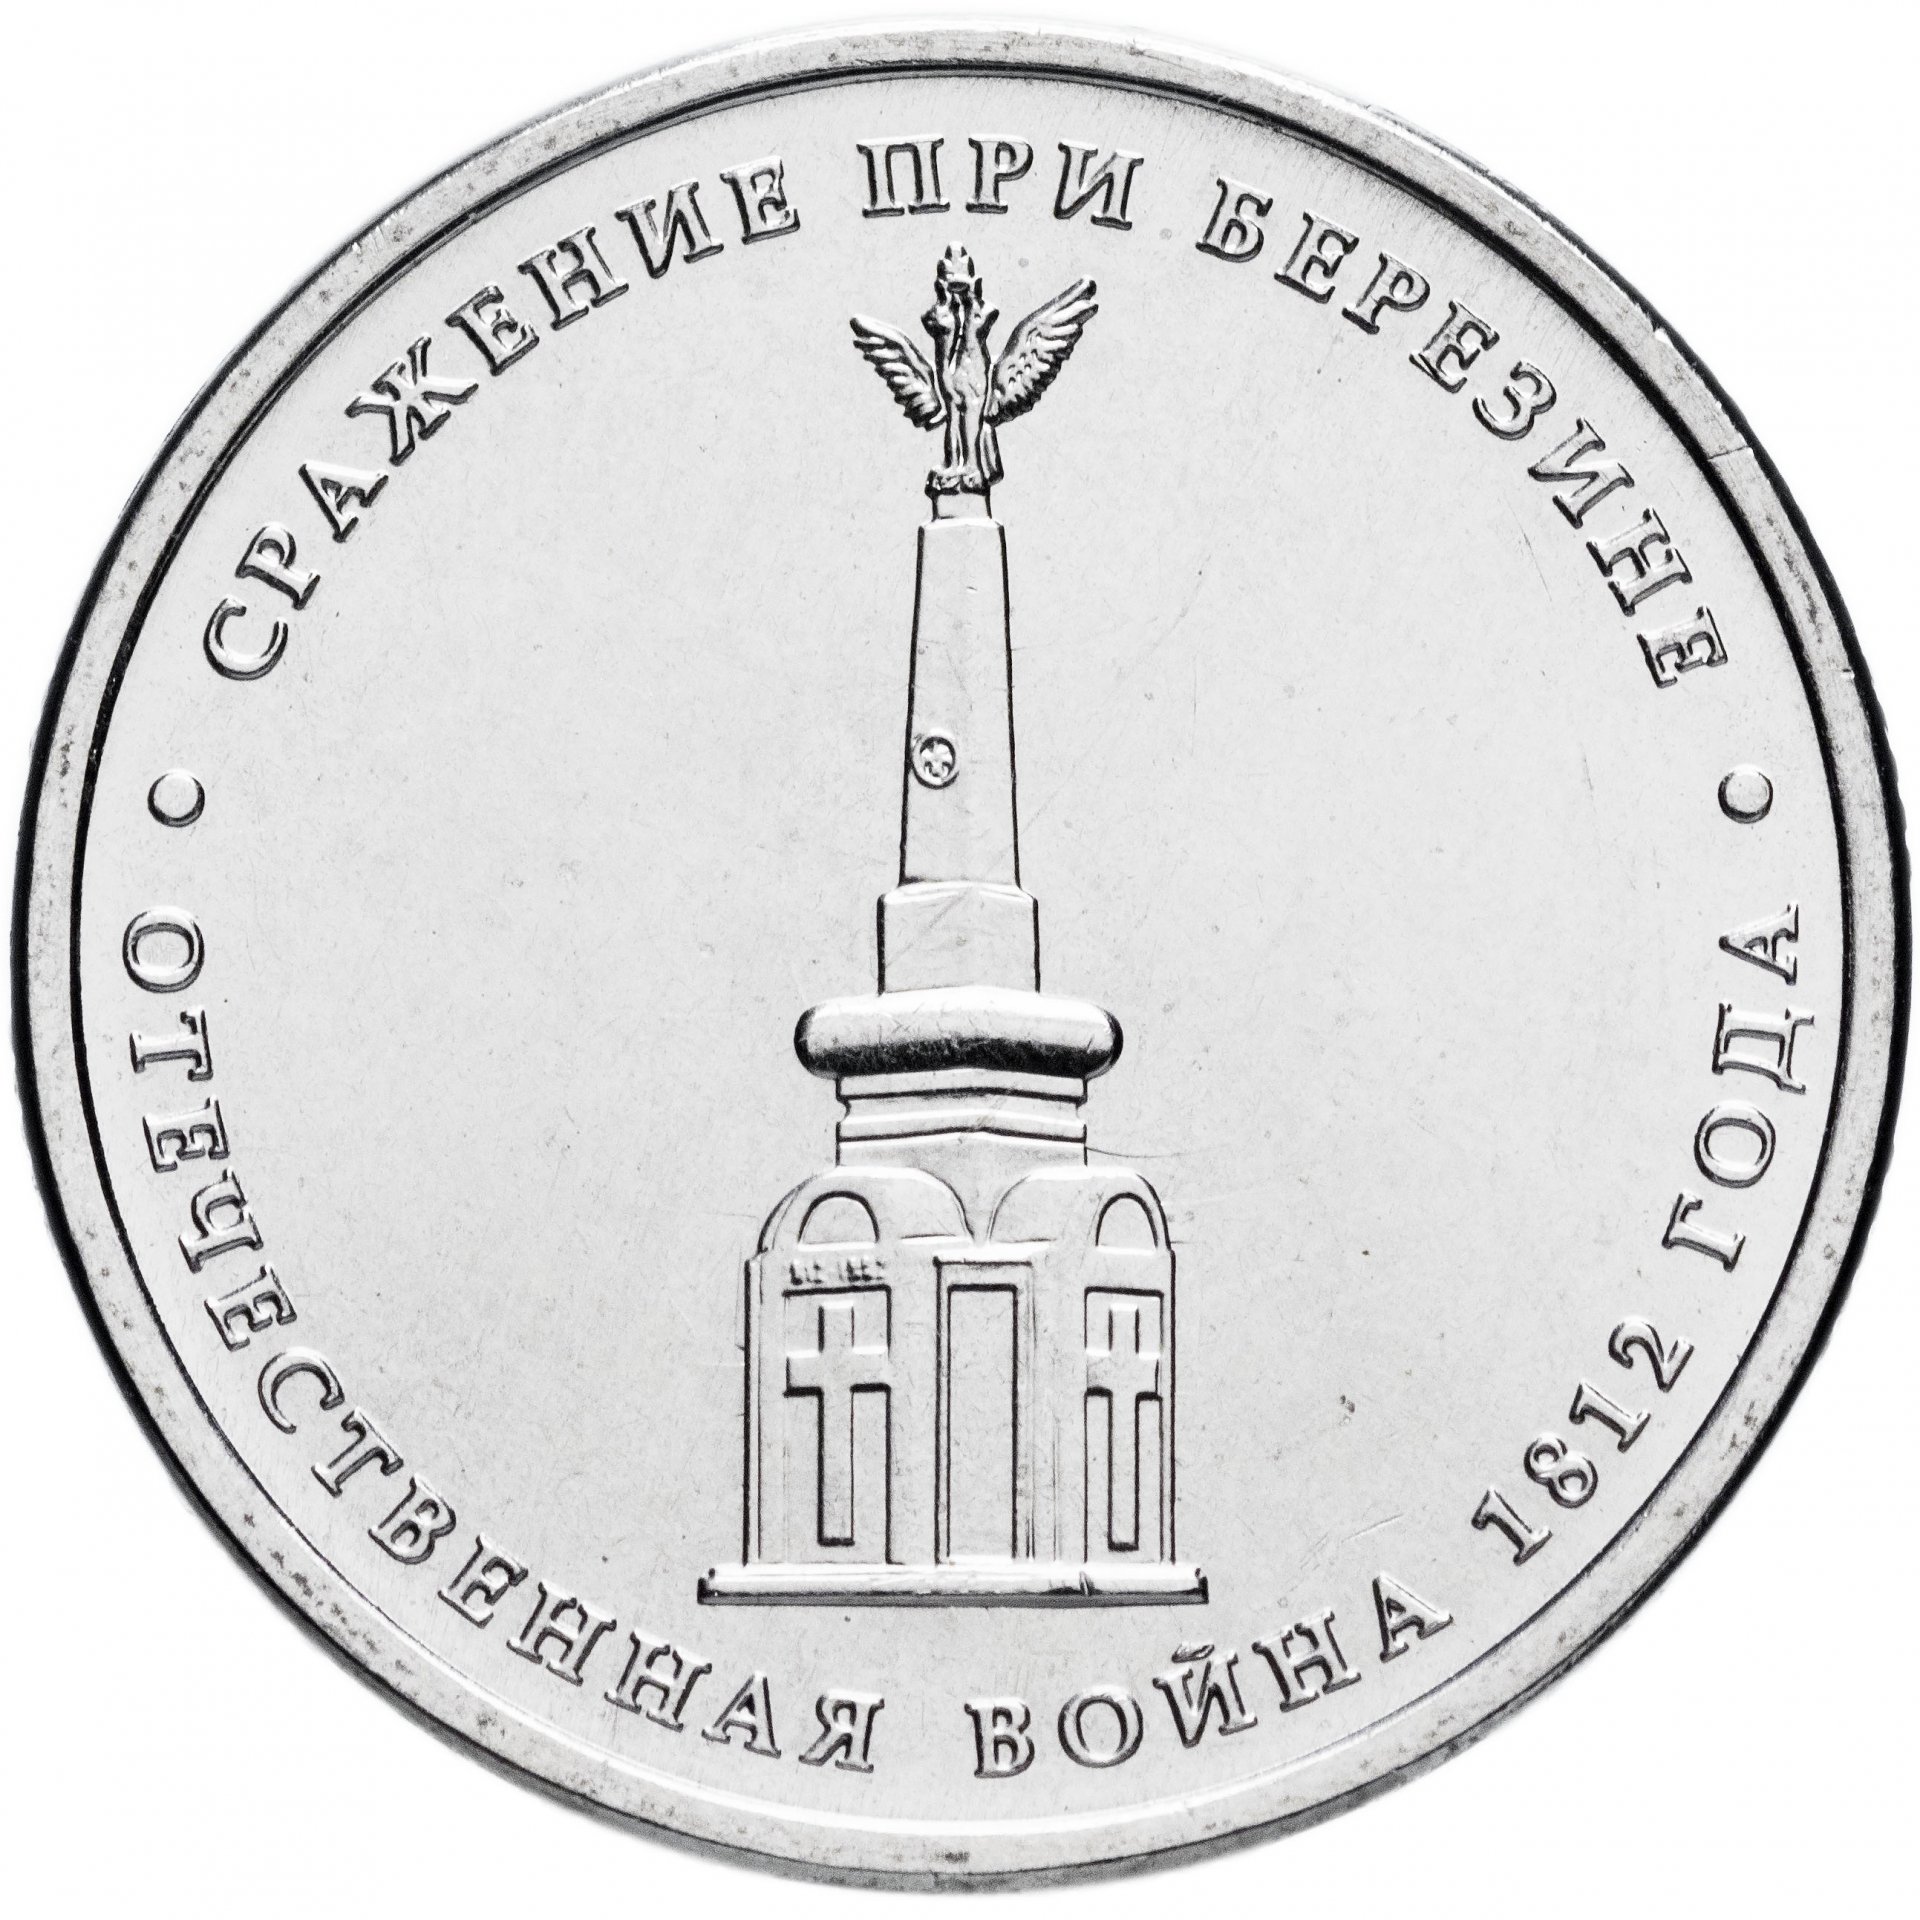 Юбилейные 5 рубля стоимость